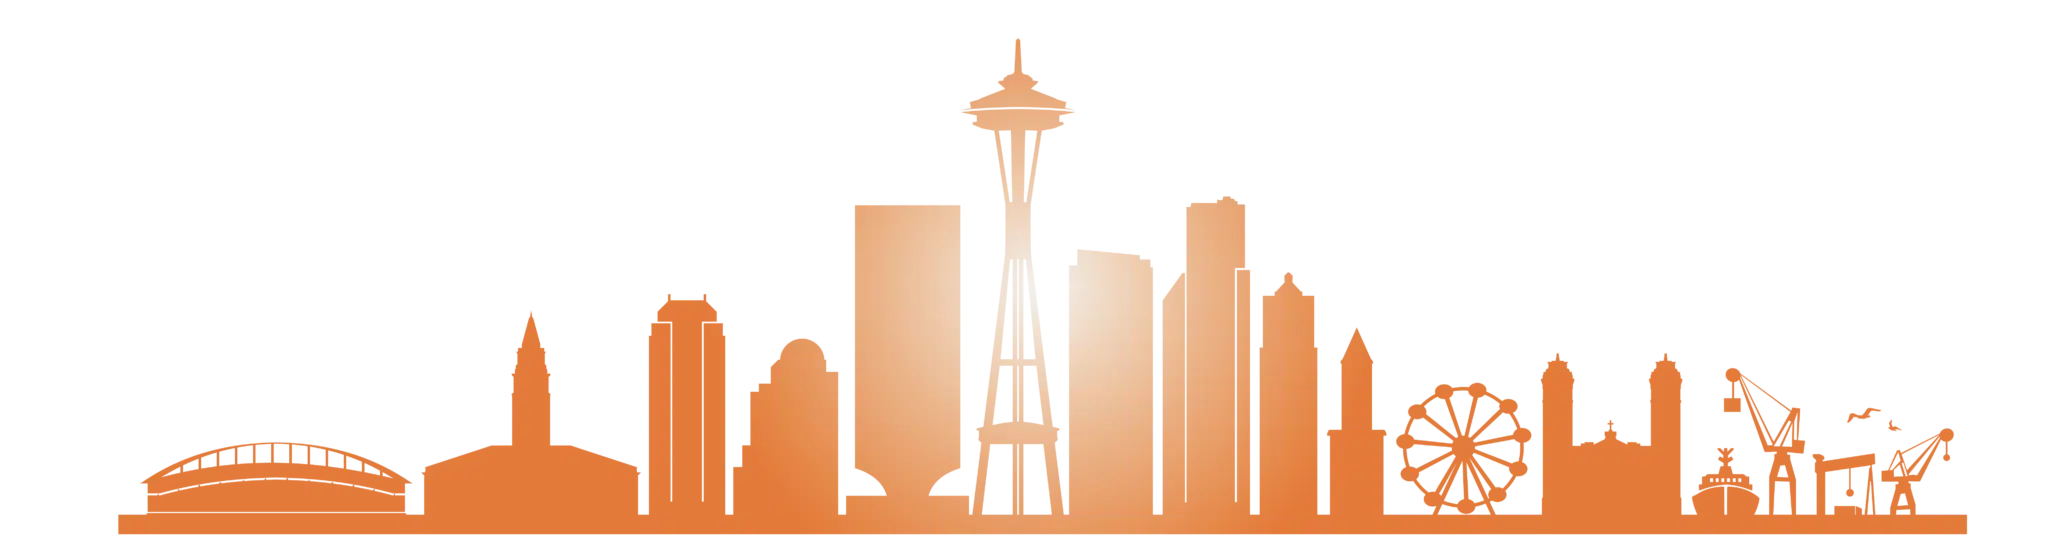 Orange graphic of the Seattle, Washington skyline.